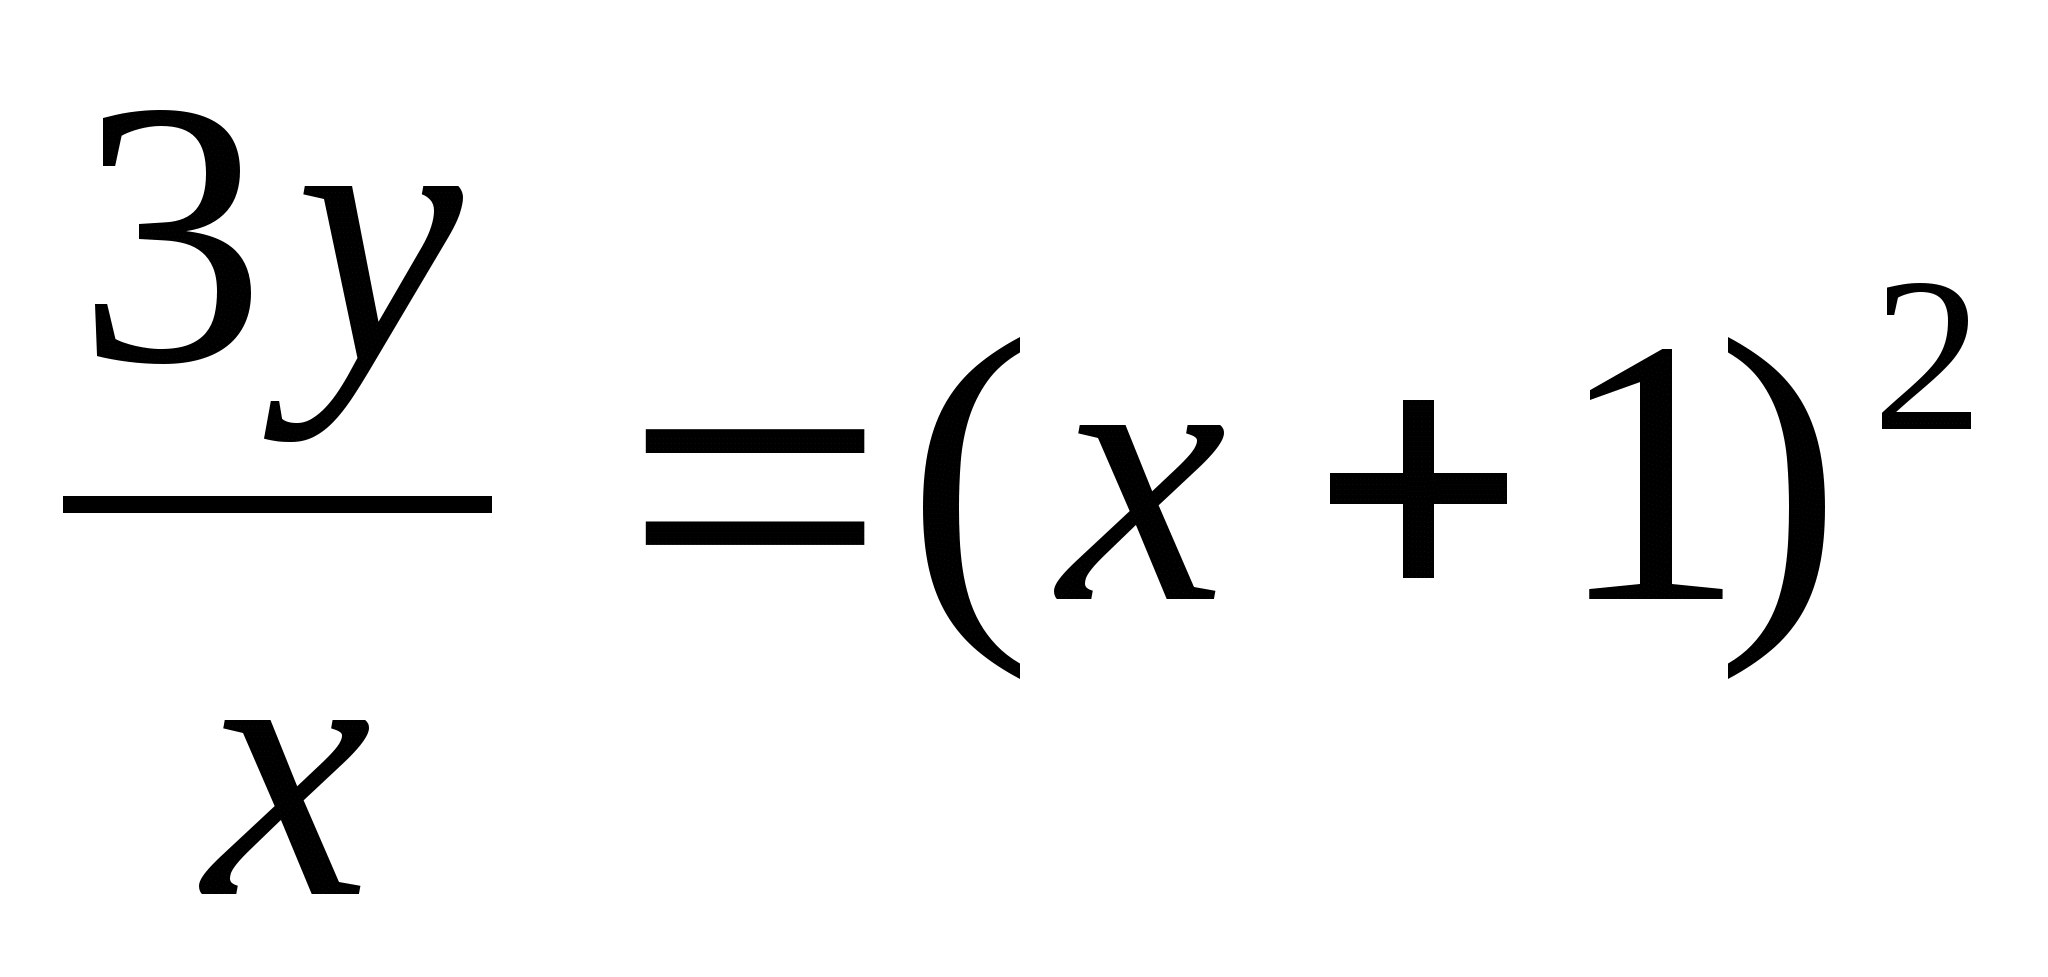 Урок по математике на тему Линейные дифференциальные уравнения второго порядка